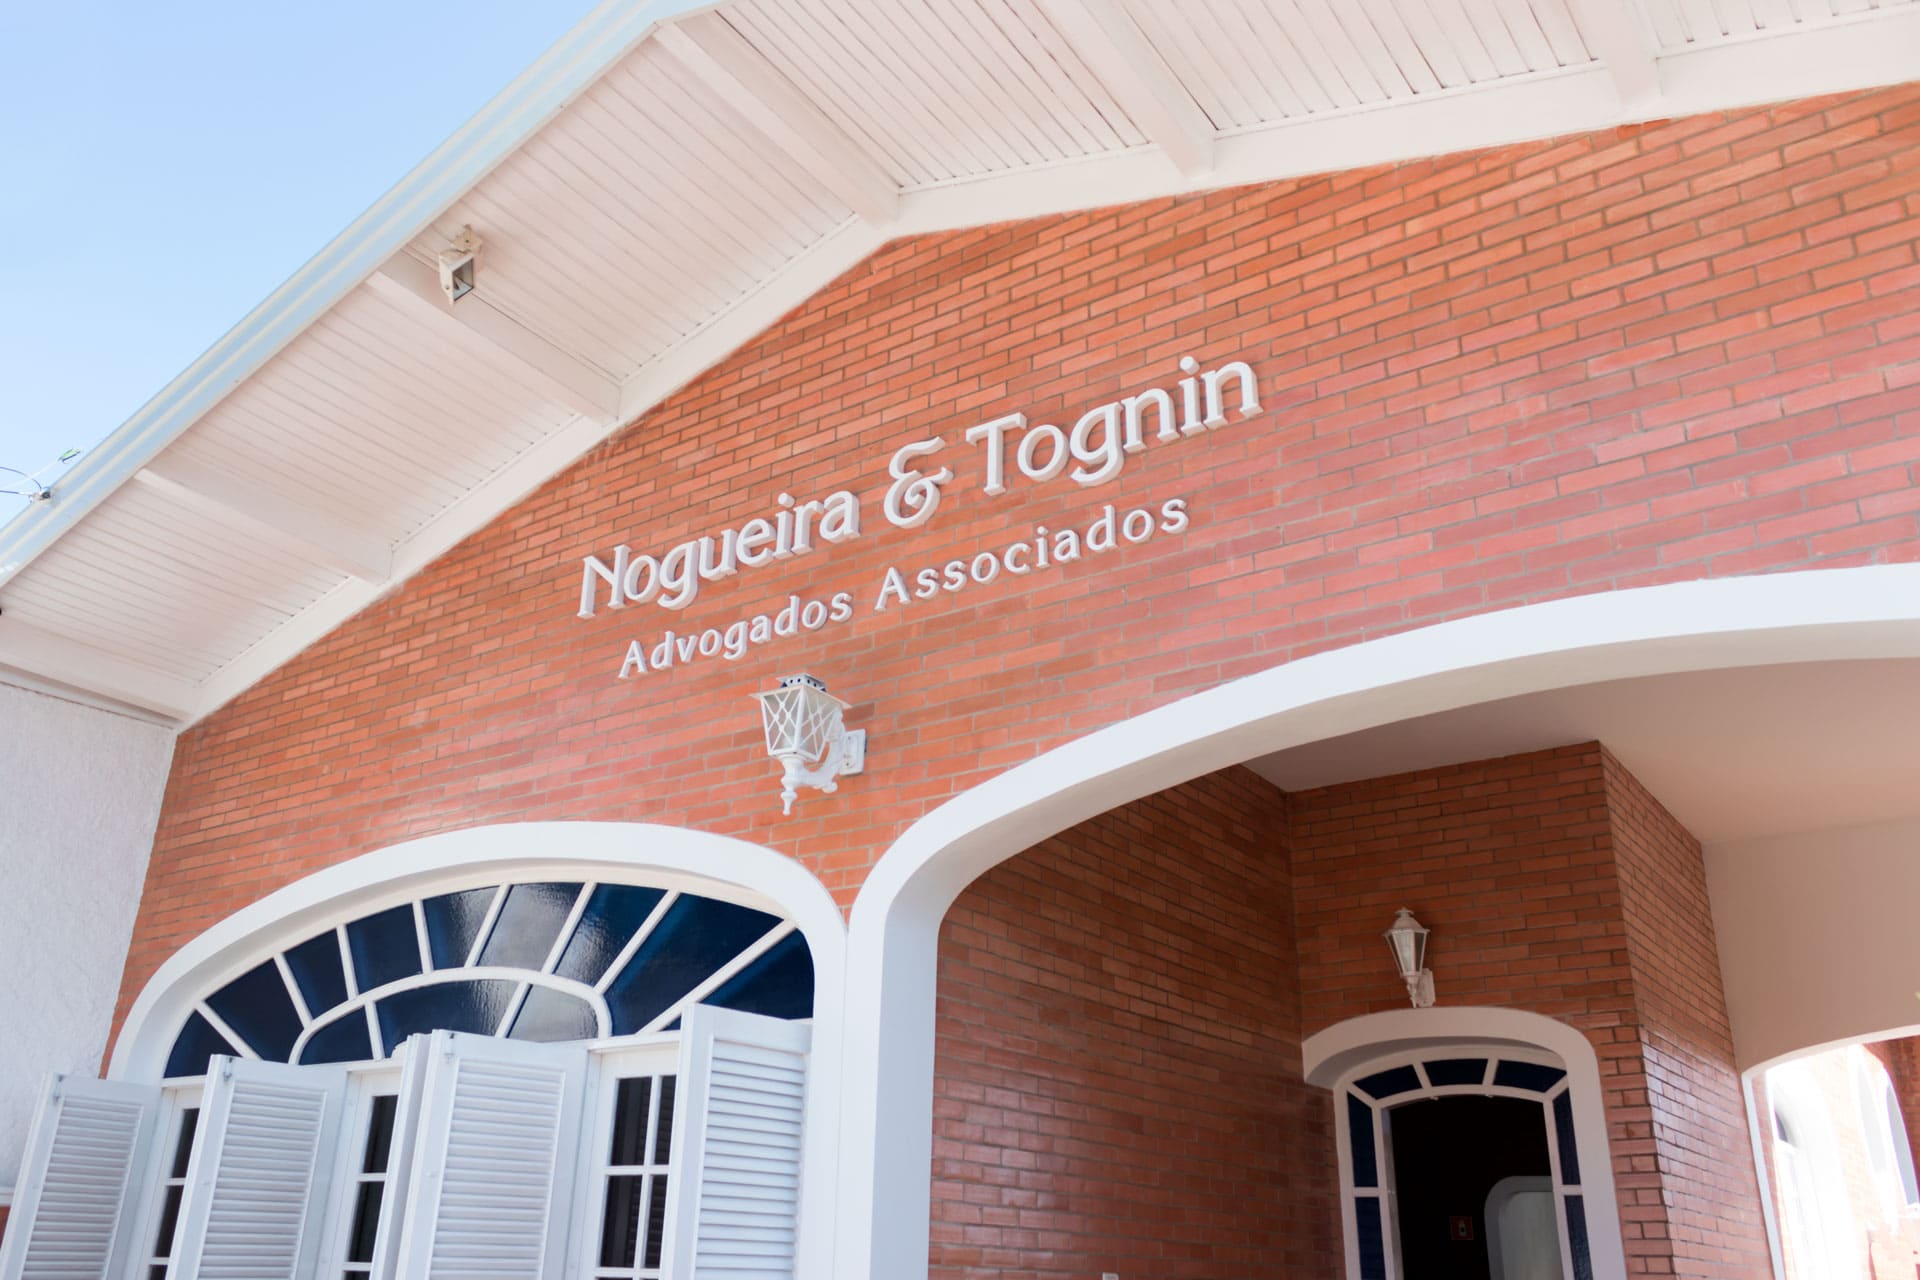 Fachada do escritório Nogueira & Tognin